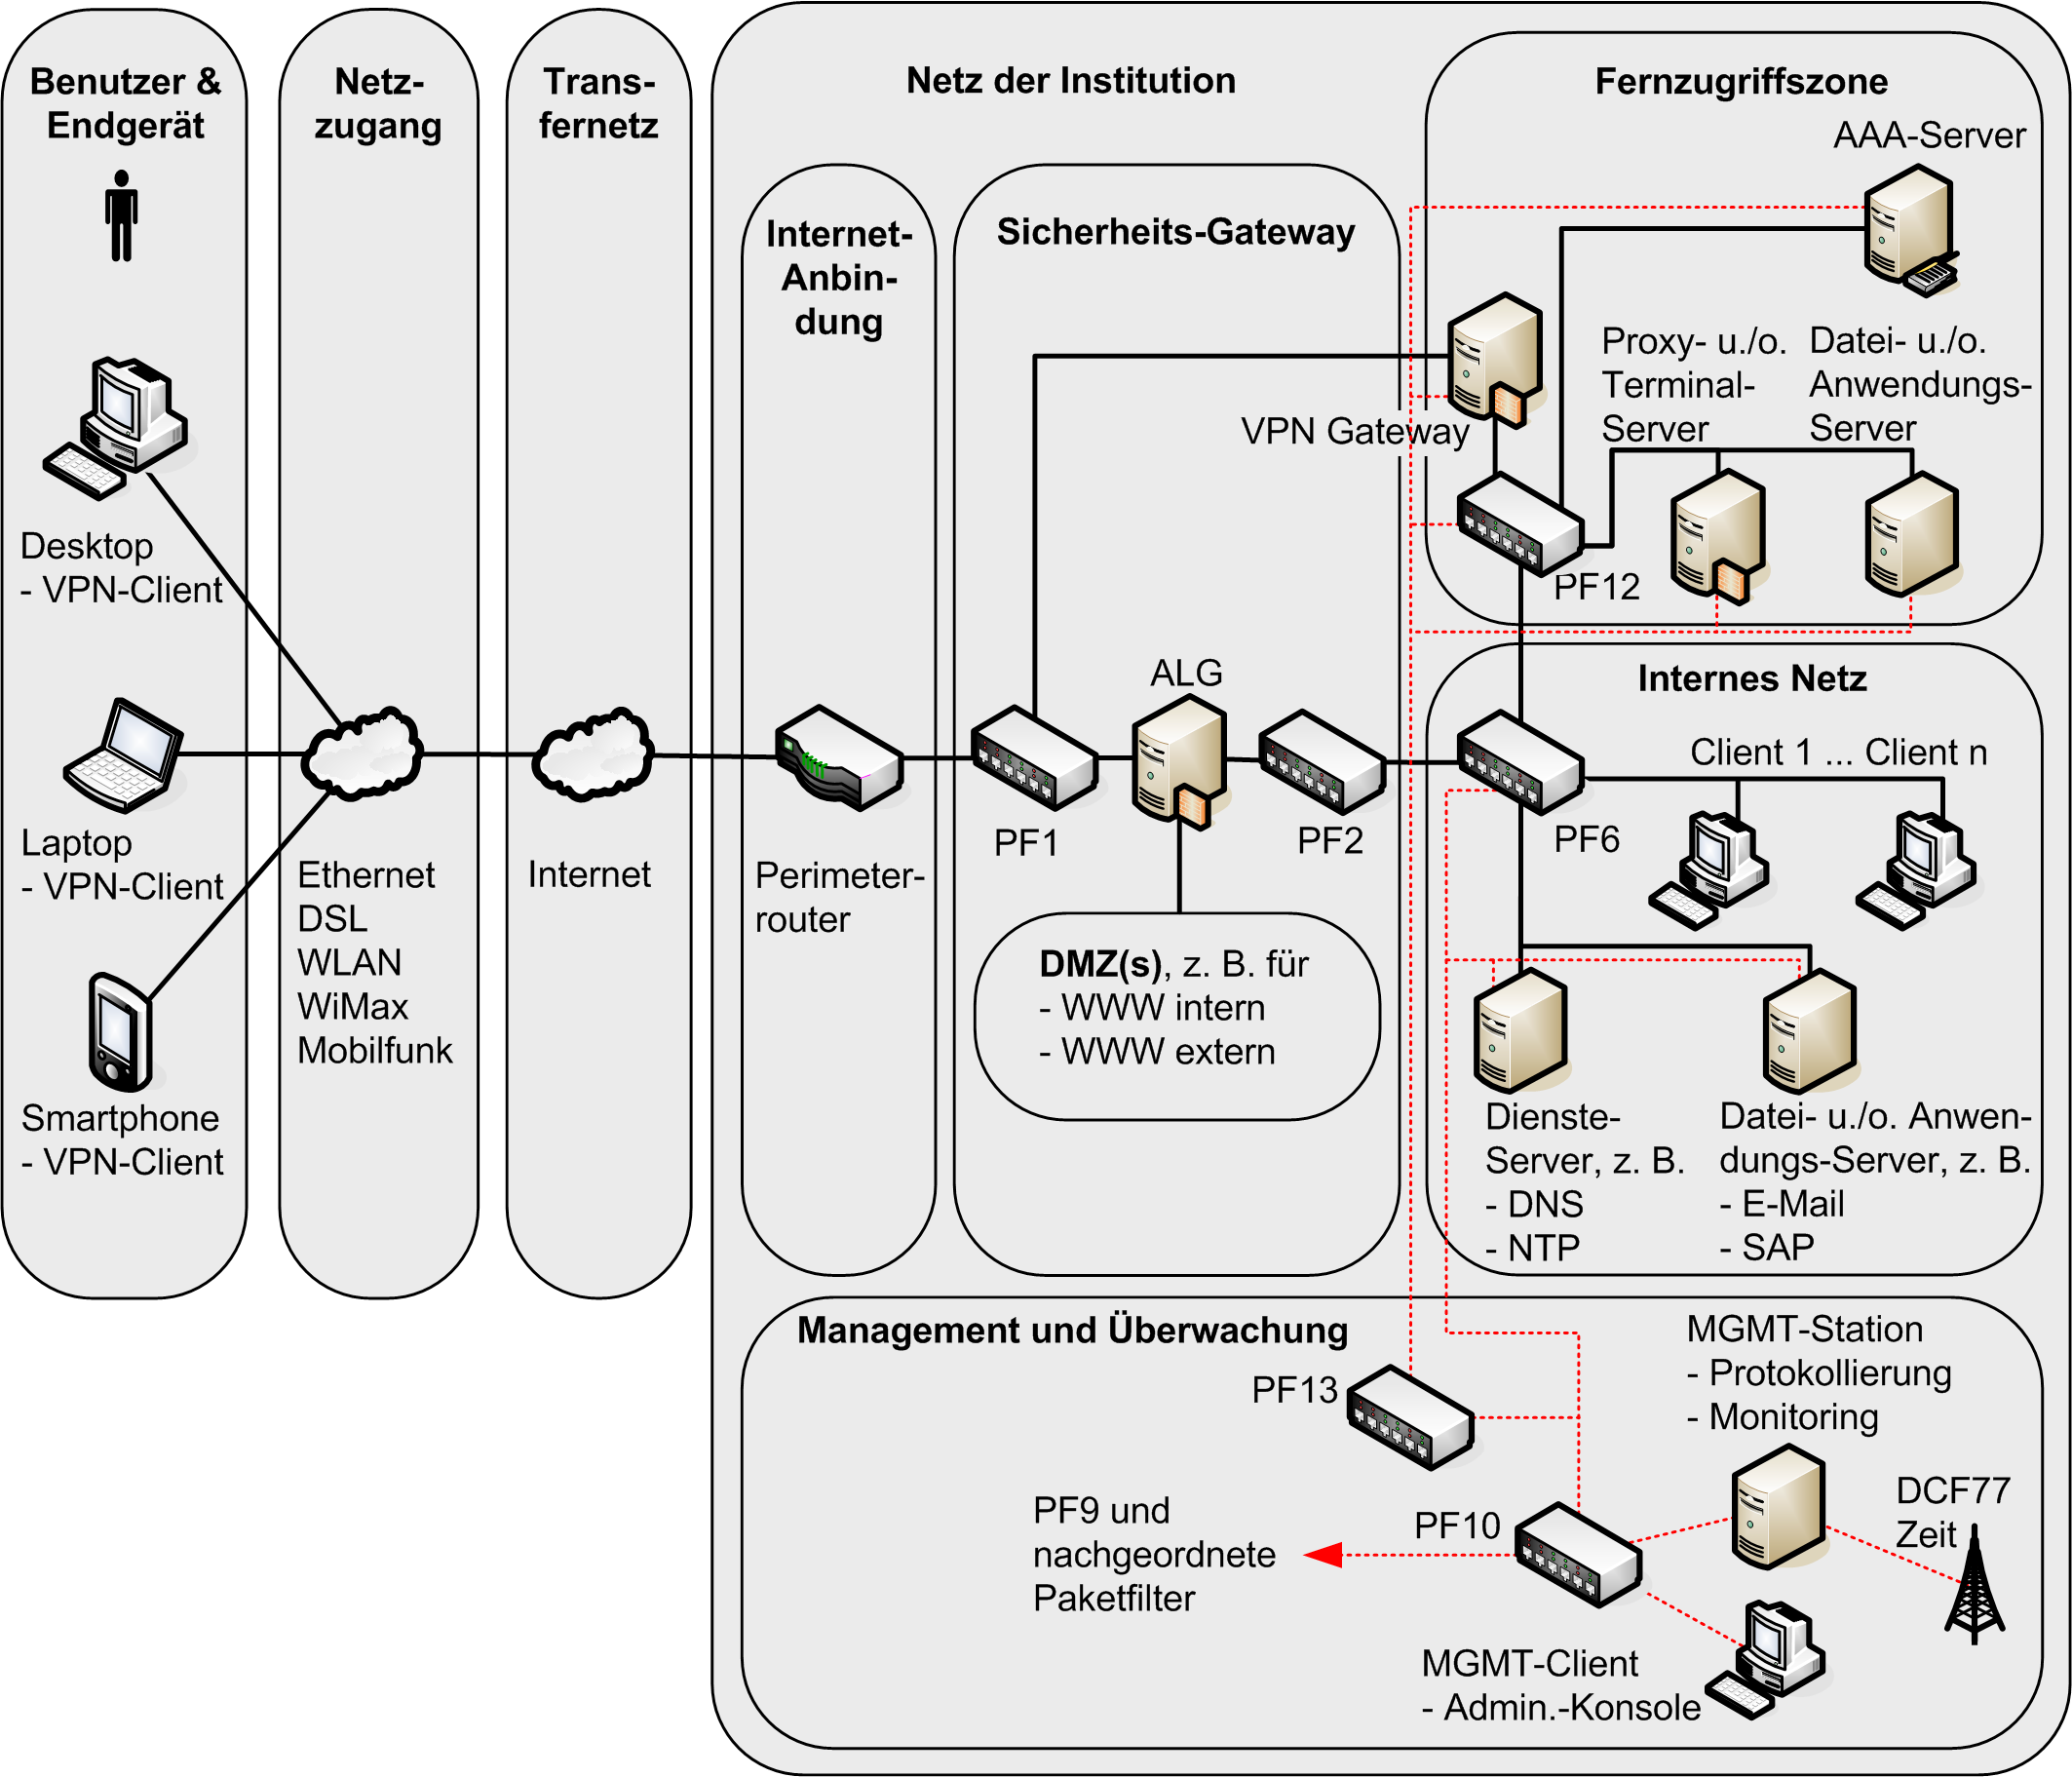 ISi-Reihe Sicherer Fernzugriff auf das interne Netz (ISi-Fern) 3.4.4 Internes Netz Das interne Netz umfasst ein Client- und ein Server-Segment mit den grundlegenden Diensten für den LAN-Betrieb.